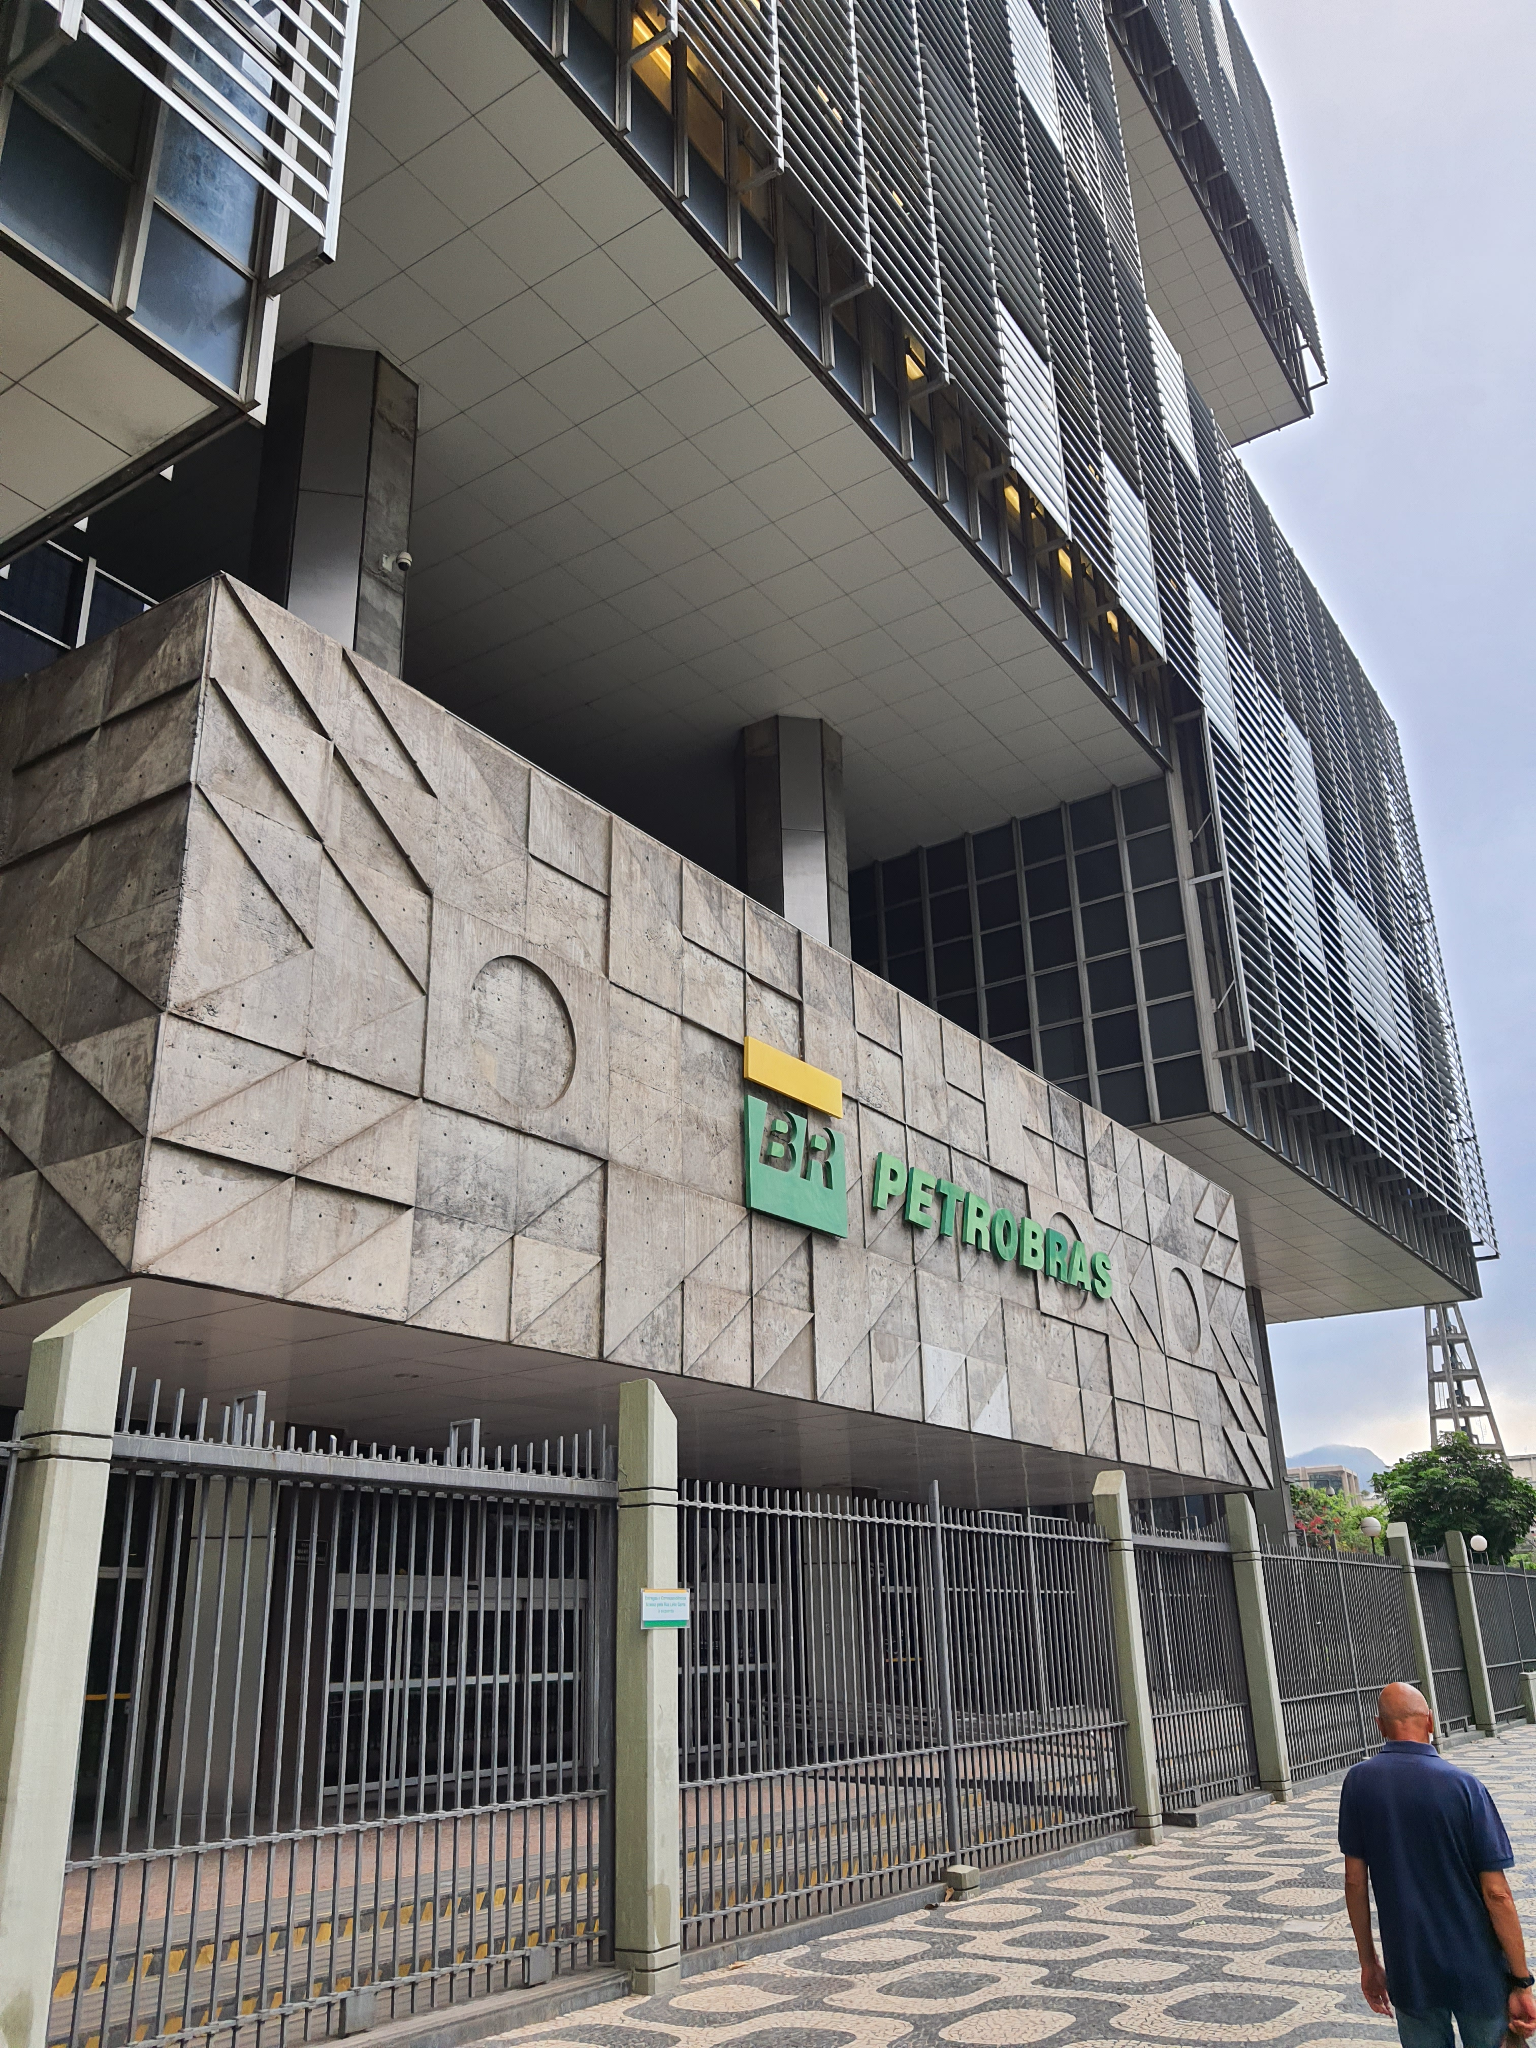 A Shell utiliza a Raízen como seu grande alicerce para verticalização de  sua atuação no Brasil